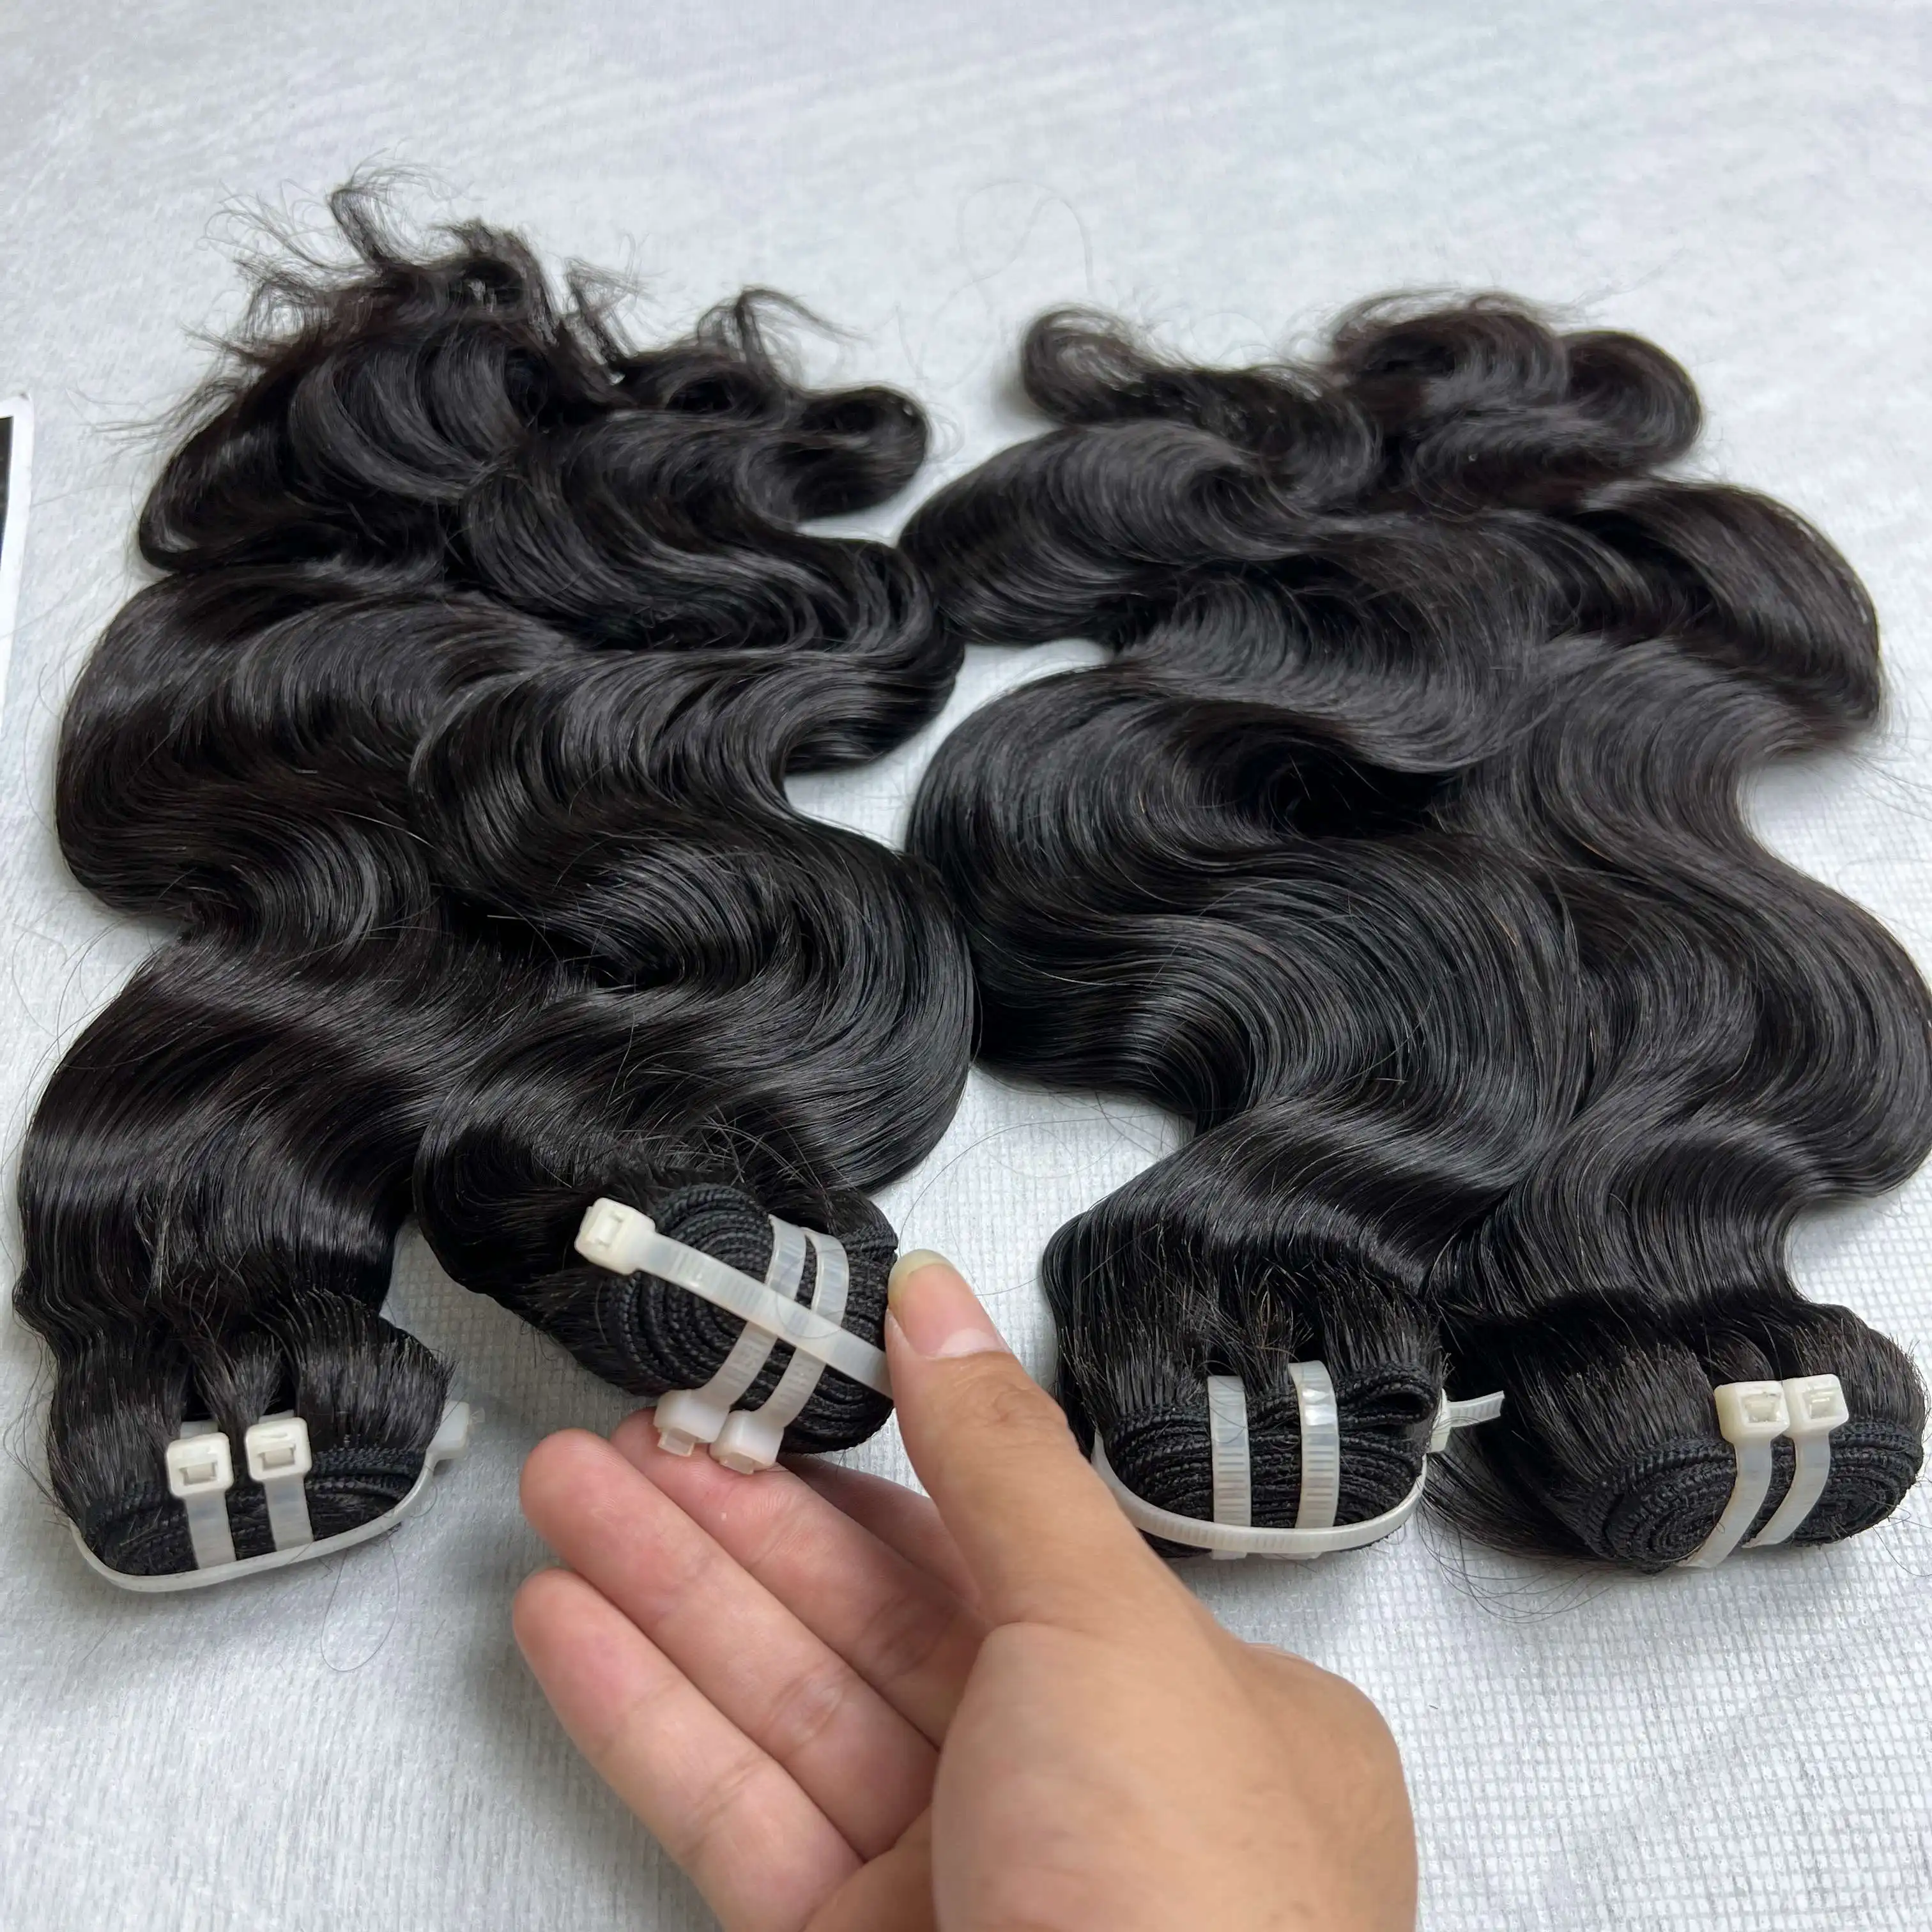 Büyük indirim sıcak anlaşma 100% doğal saç vücut dalga 22 inç toptan fiyat vietnamca fabrika bulutlu saç koleksiyonu